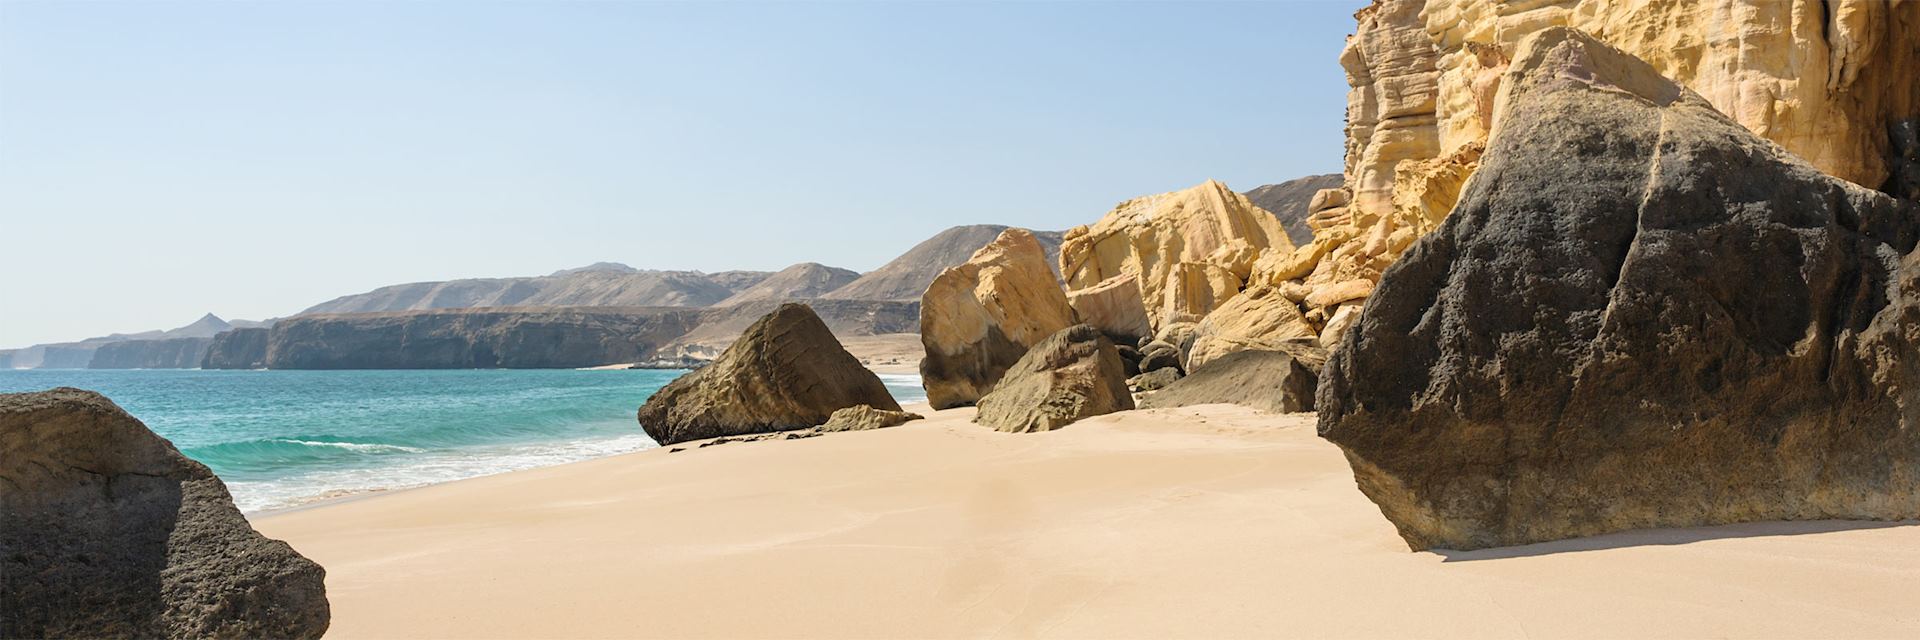 Ras Al Jinz beach